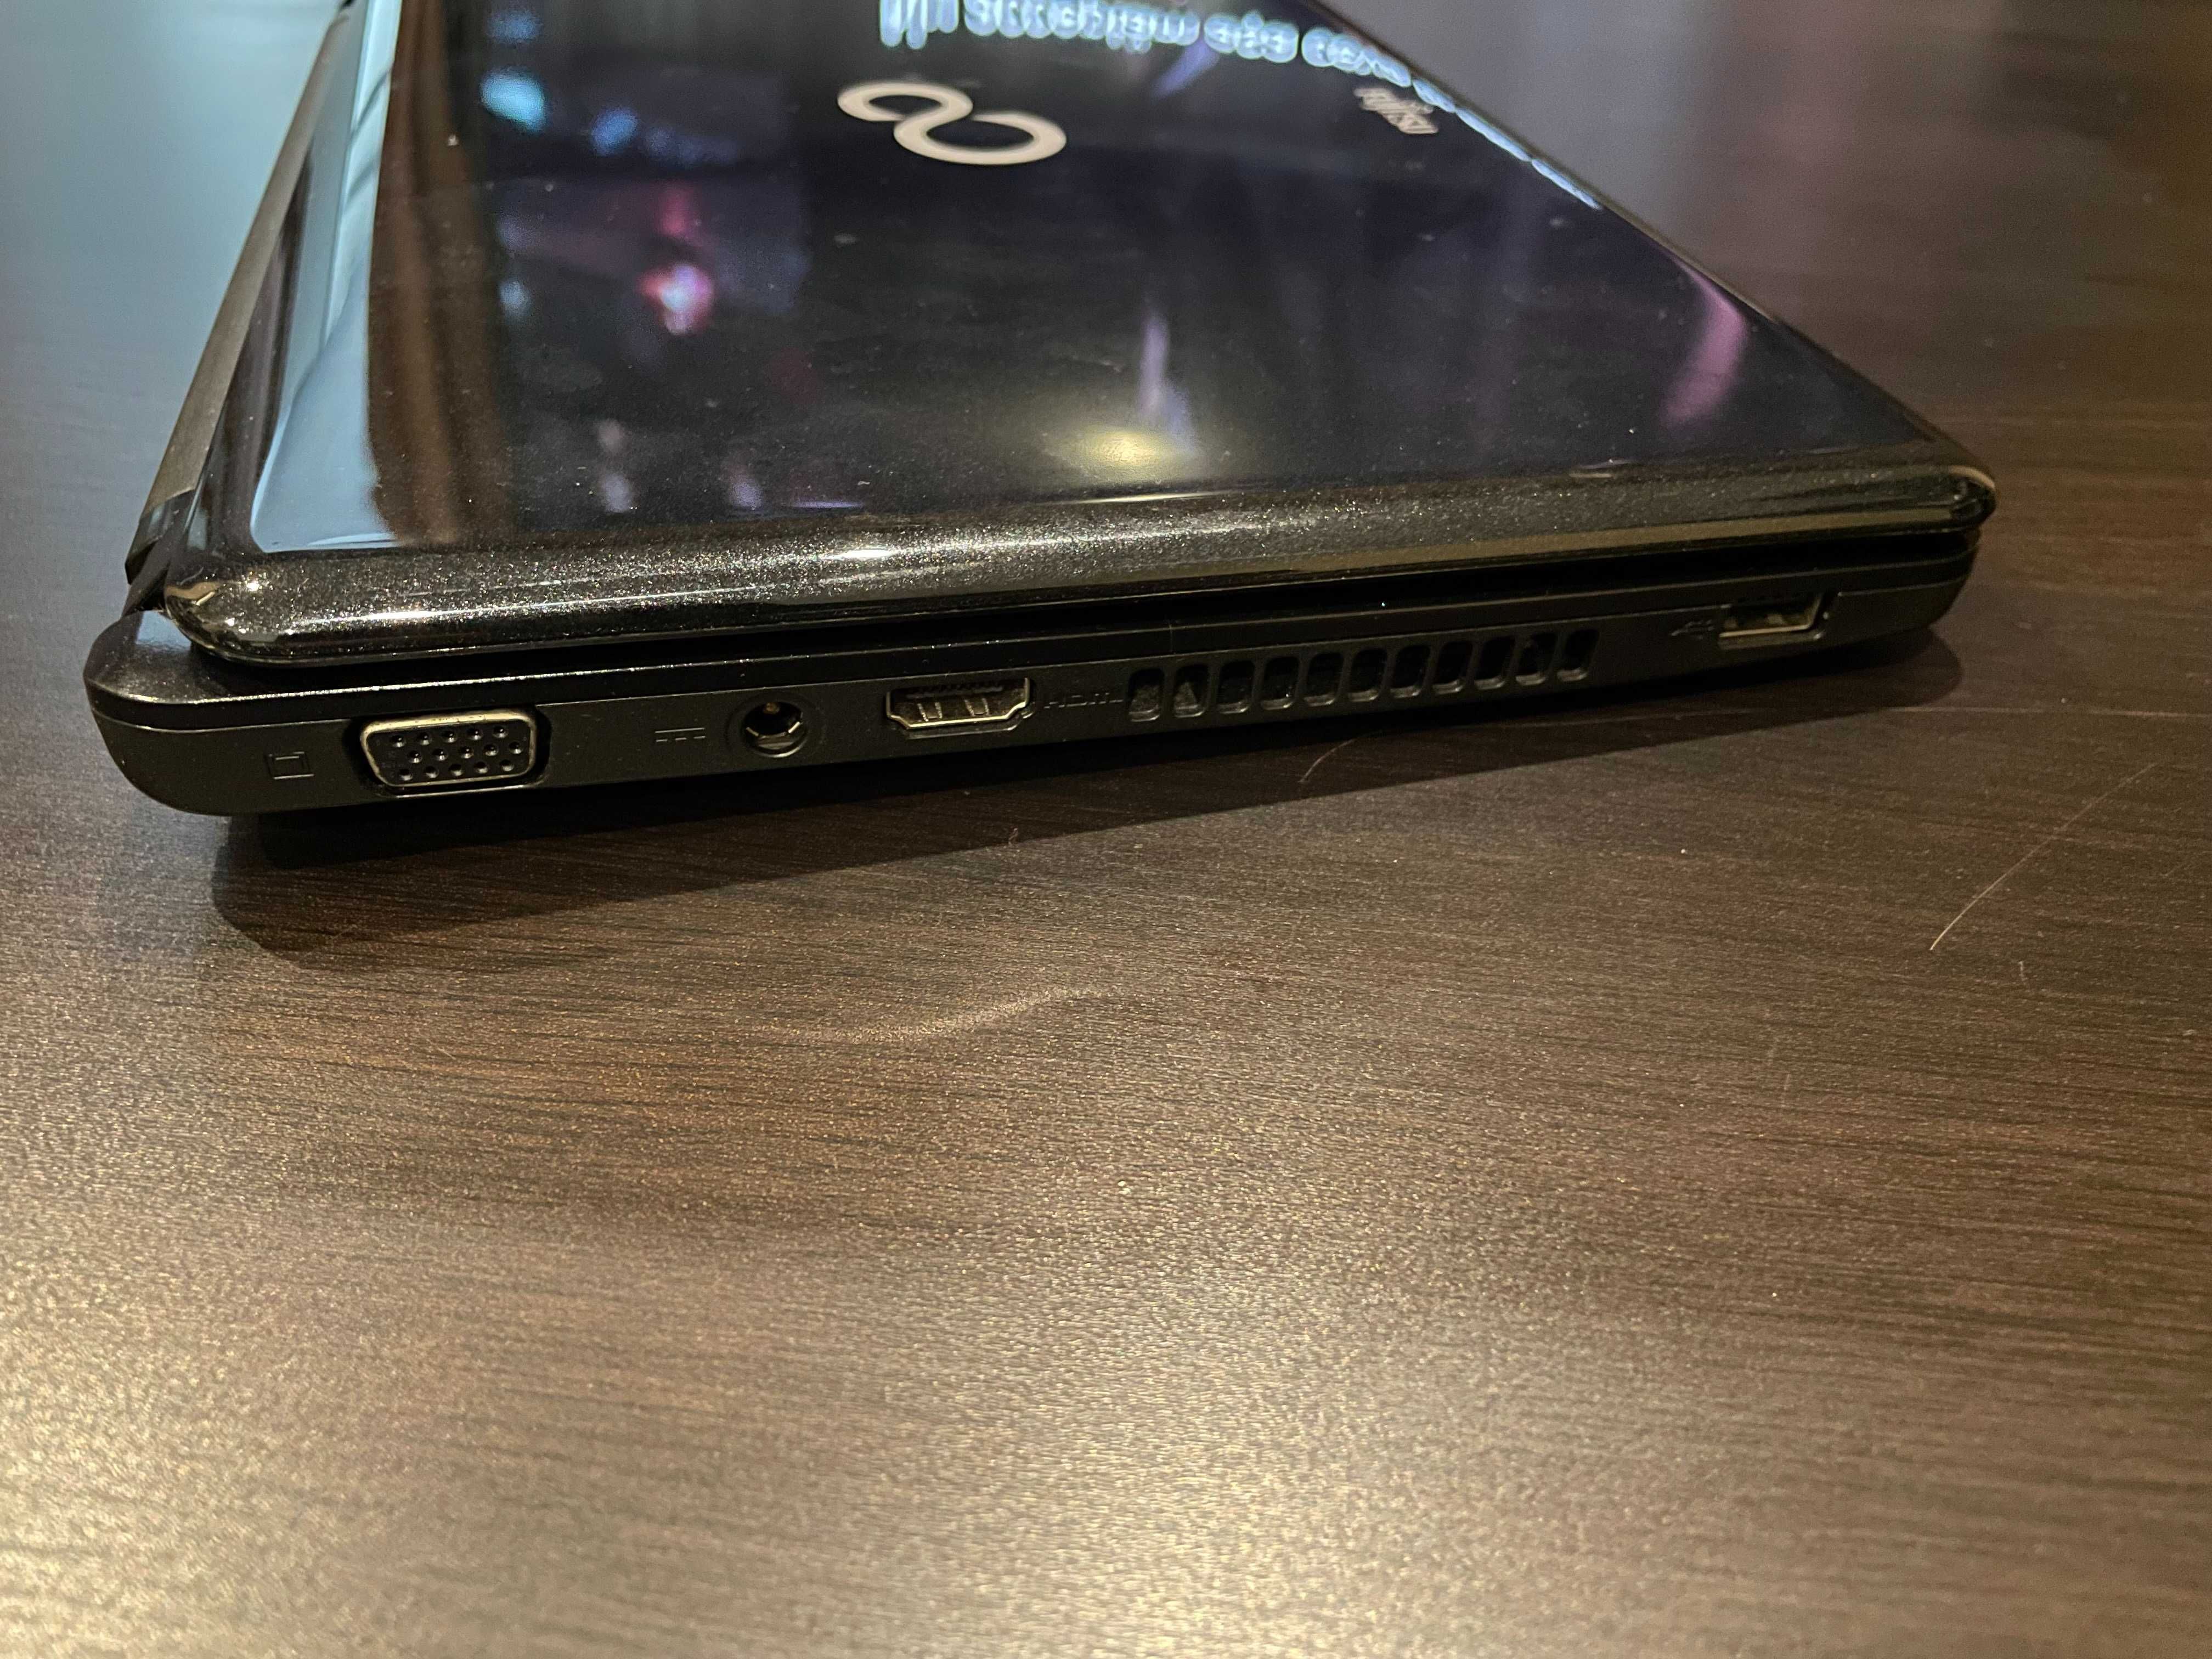 Laptop Fujitsu Lifebook PH530